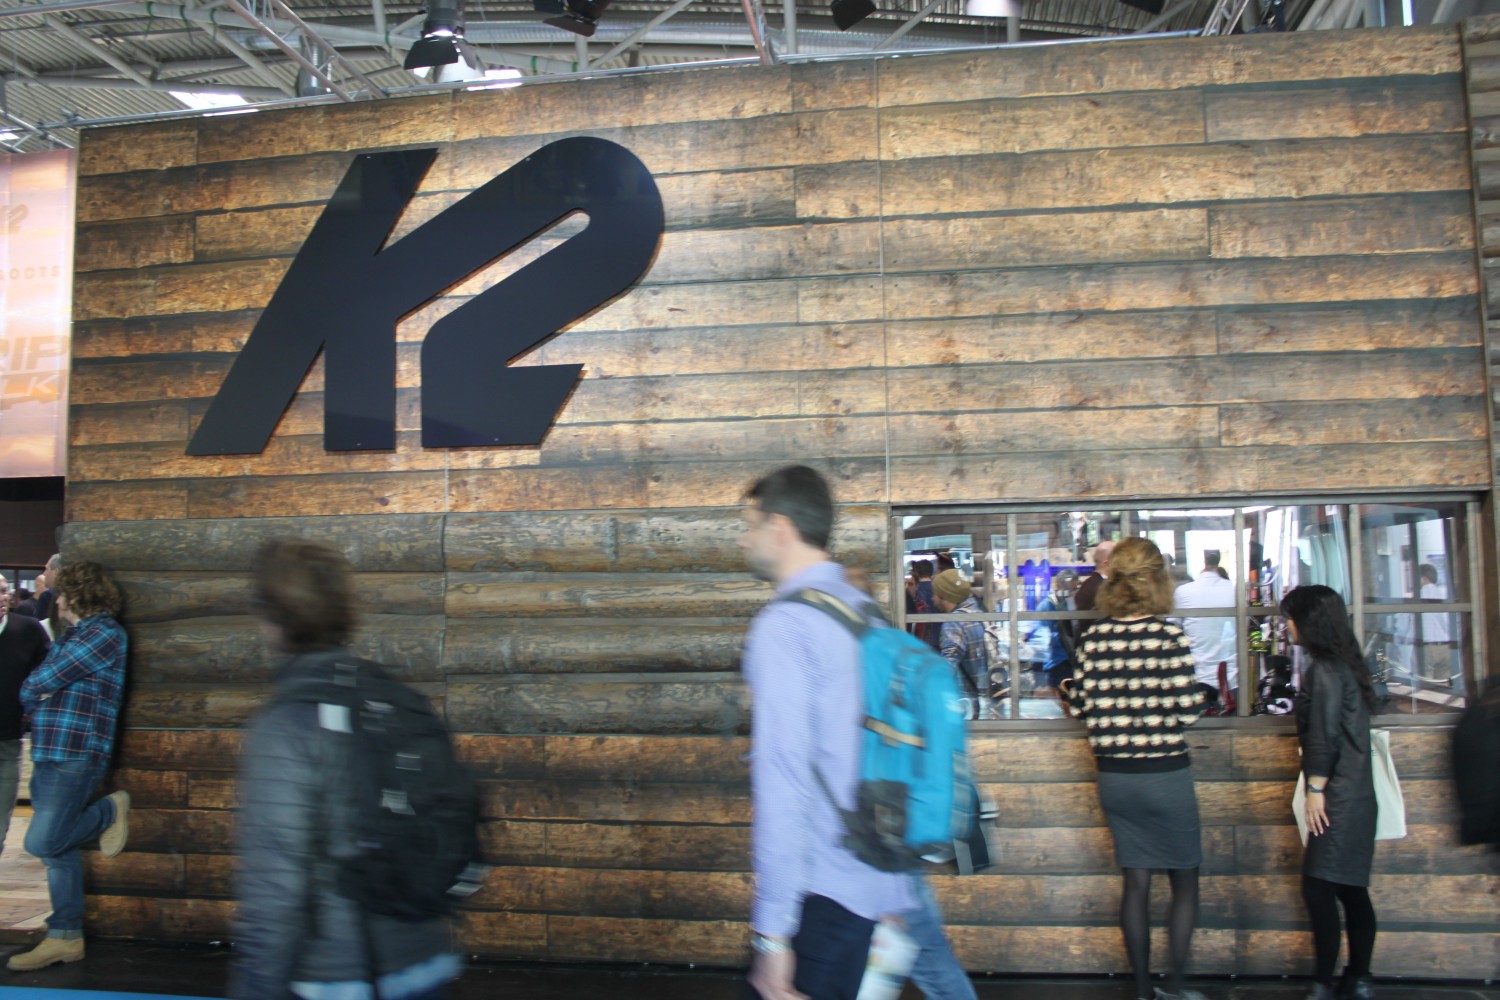 K2 prässentierte sich mit einer soliden Holzfassade!